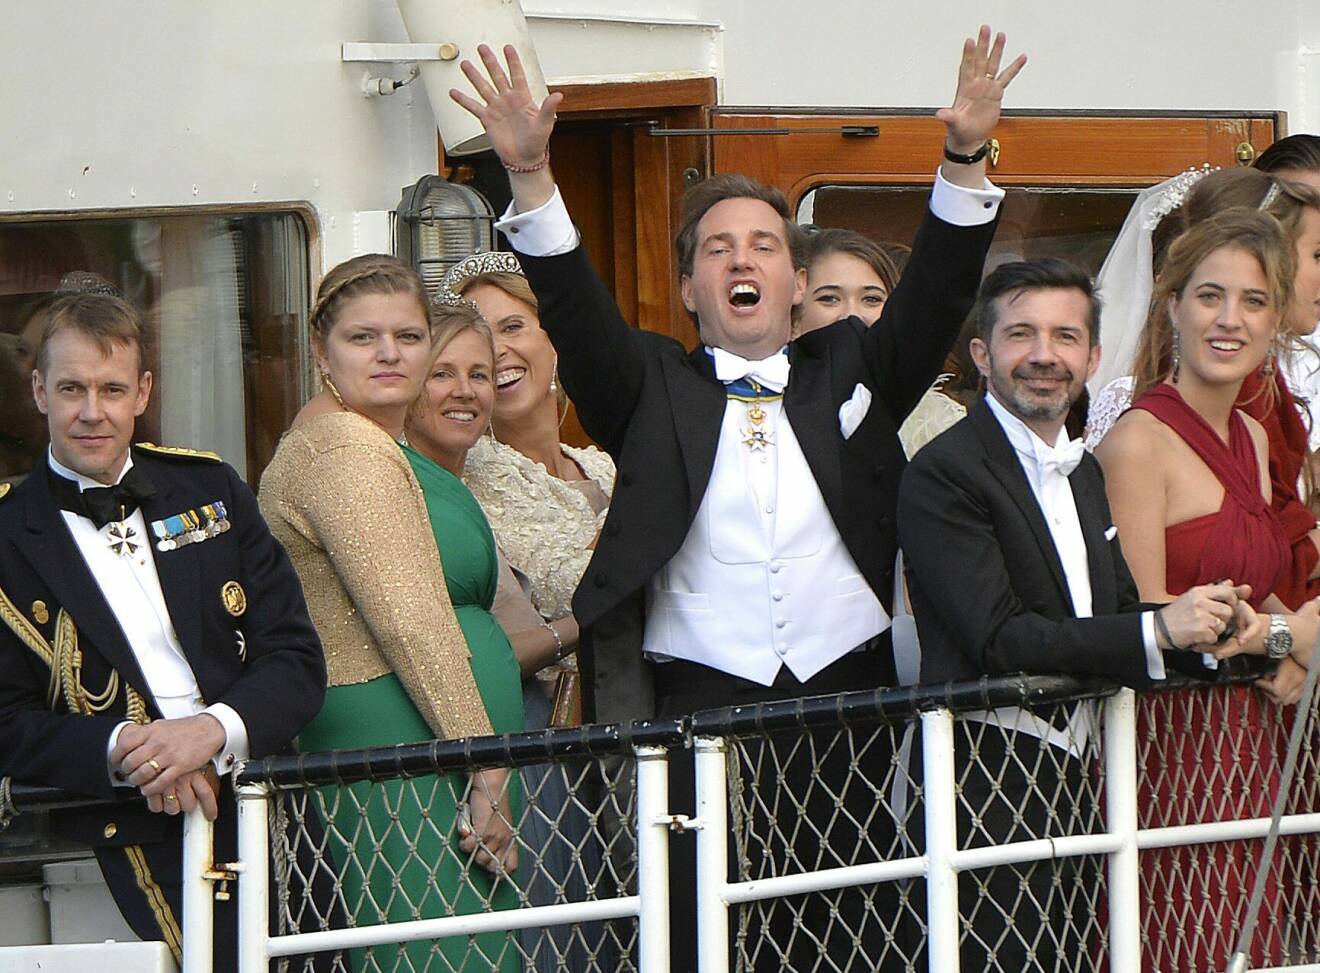 Chris O’Neill festar ombord på en skärgårdsbåt på väg till sin och prinsessan Madeleines bröllopsmiddag